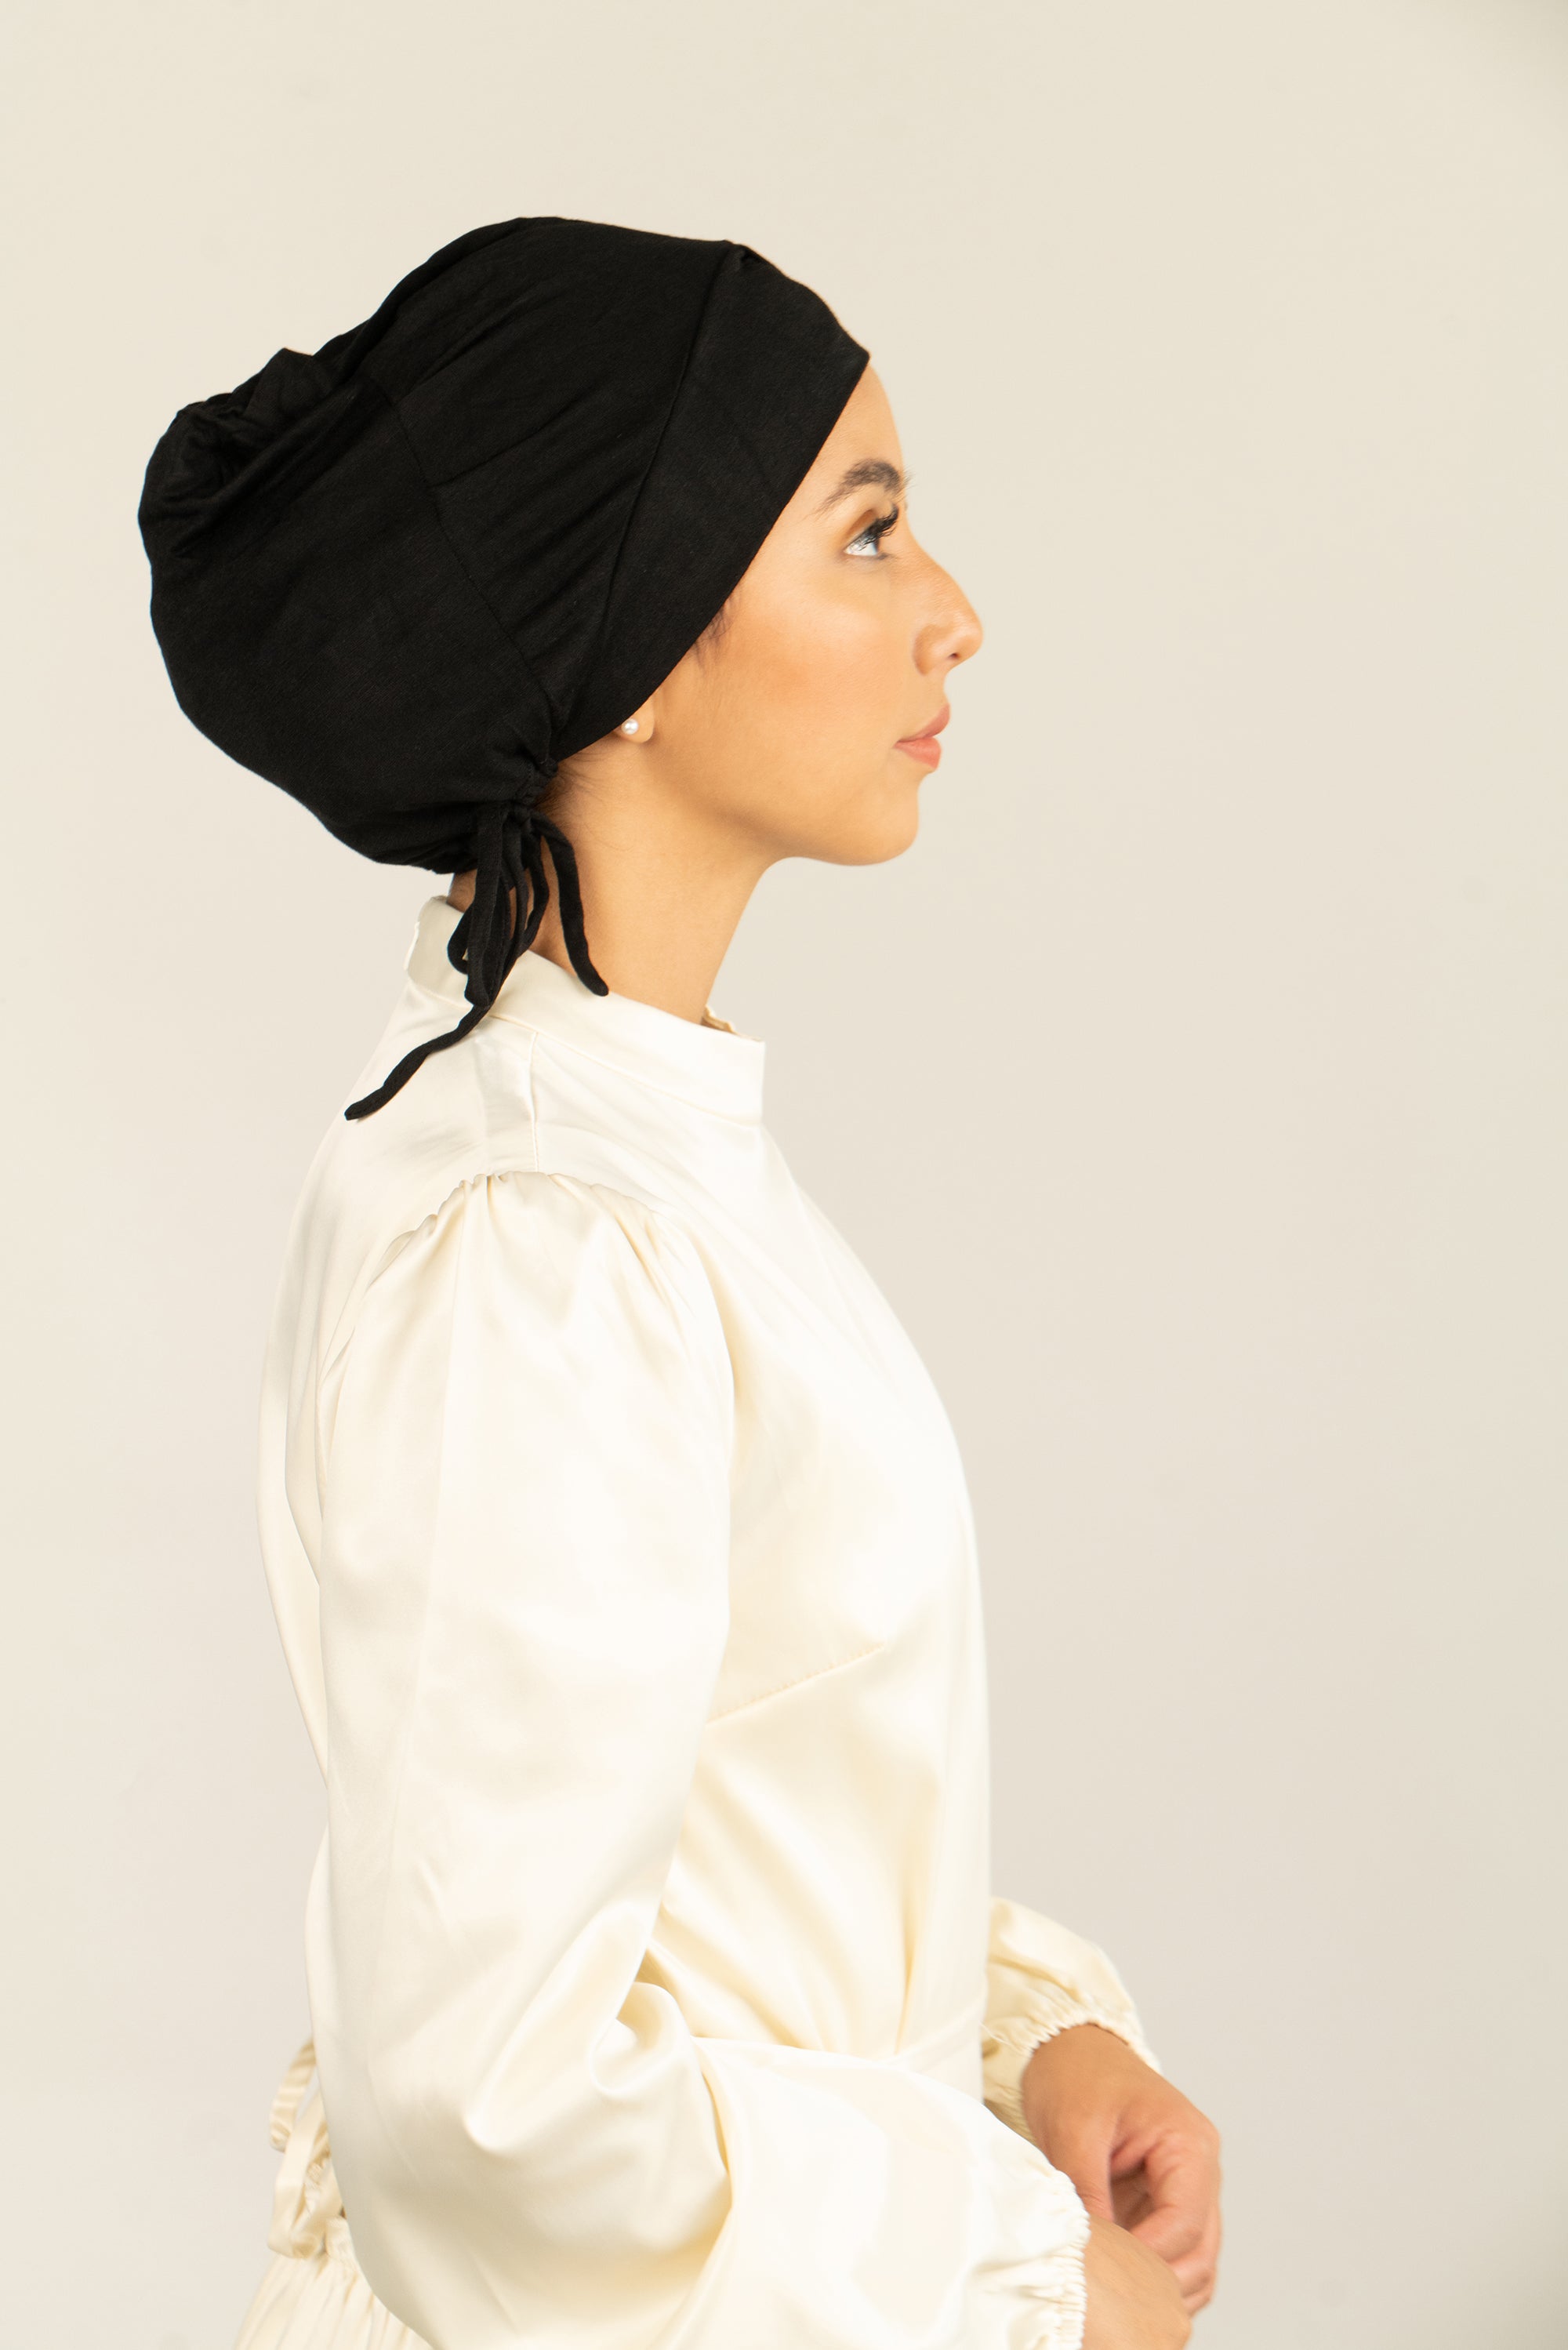 Black Turbans for Women-Hijab Undercap-Hijab Underscarf-Hijab Cap